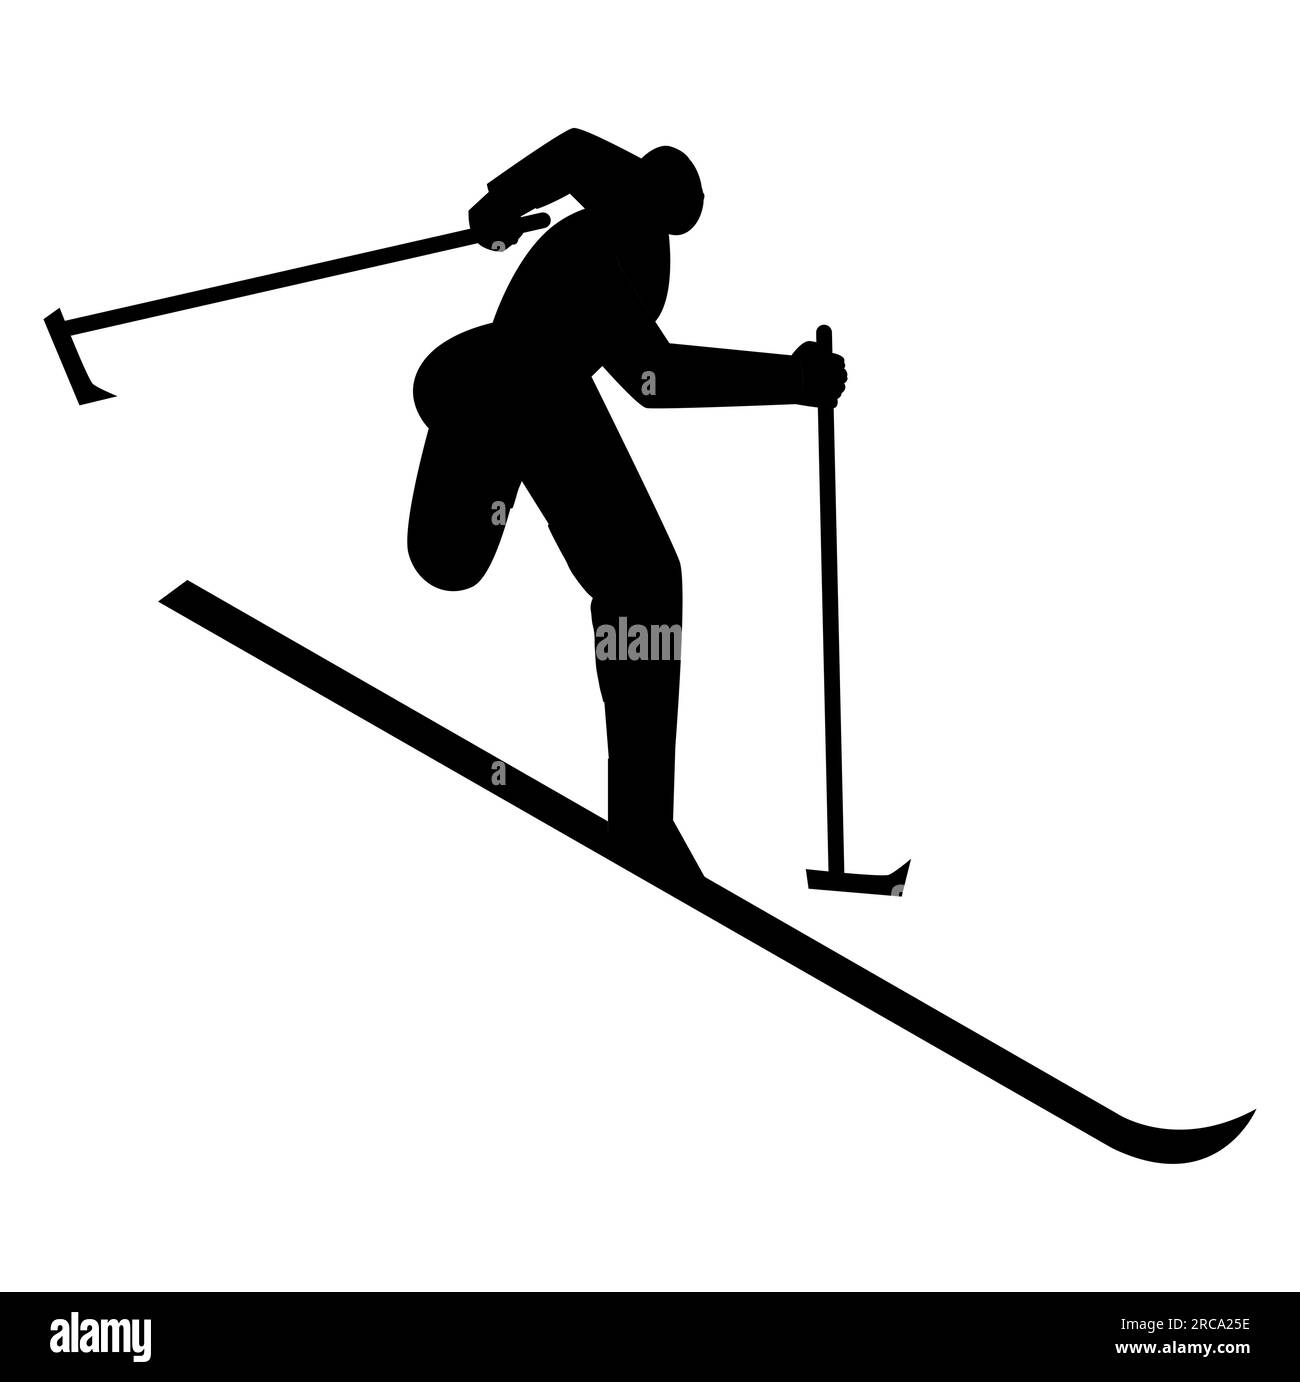 Schwarze Silhouette eines Mannes Ski fahren, ein Mann Ski fahren auf den Hügeln, Vektordarstellung isoliert auf weißem Hintergrund Stock Vektor